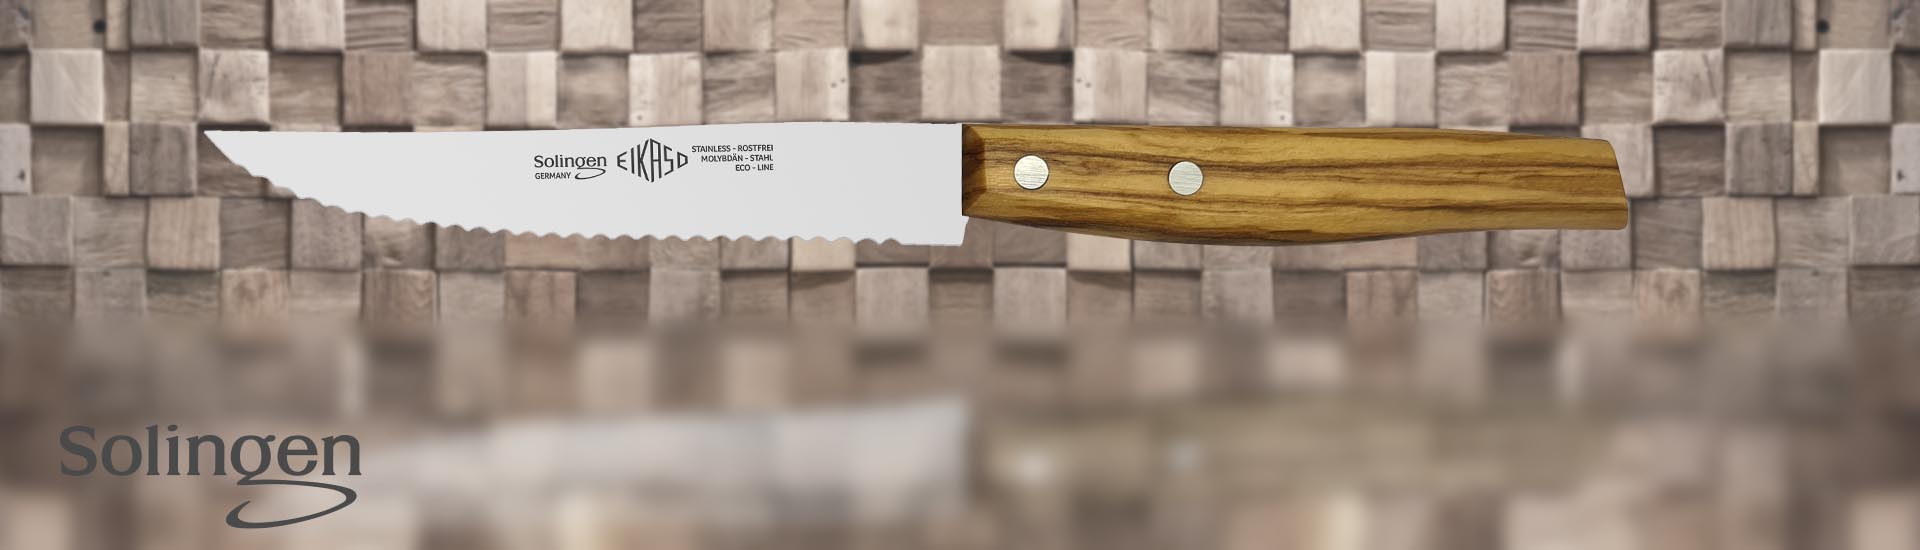 Original Eikaso Solingen Steakmesser mit Welle und Holzgriff 11cm